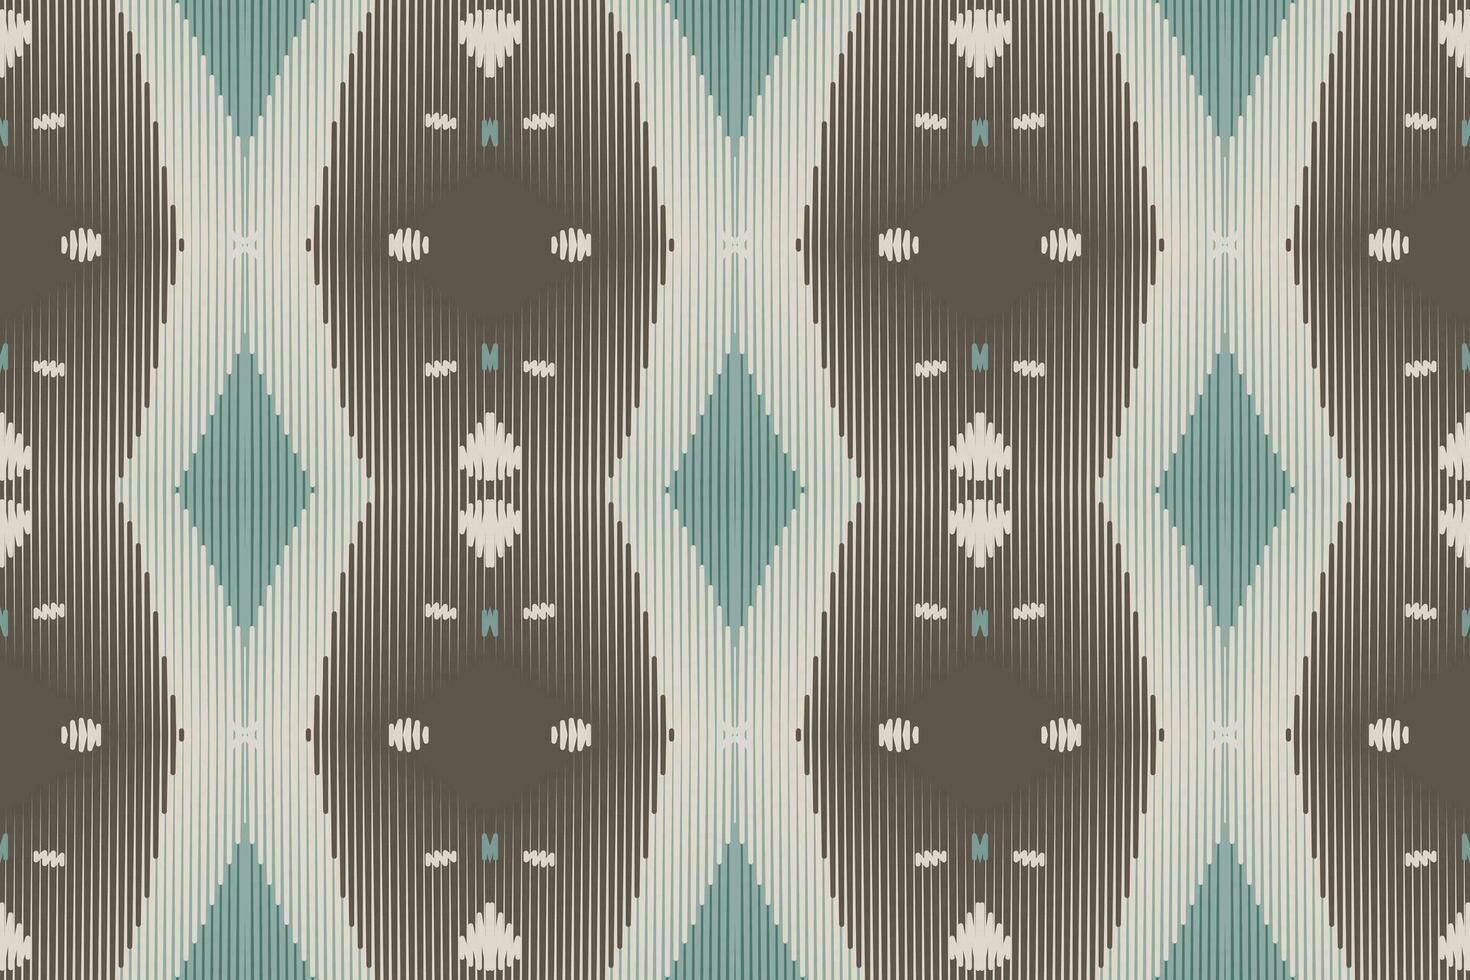 ikat en tissu paisley broderie Contexte. ikat conception géométrique ethnique Oriental modèle traditionnel.aztèque style abstrait vecteur illustration.design pour texture, tissu, vêtements, emballage, paréo.